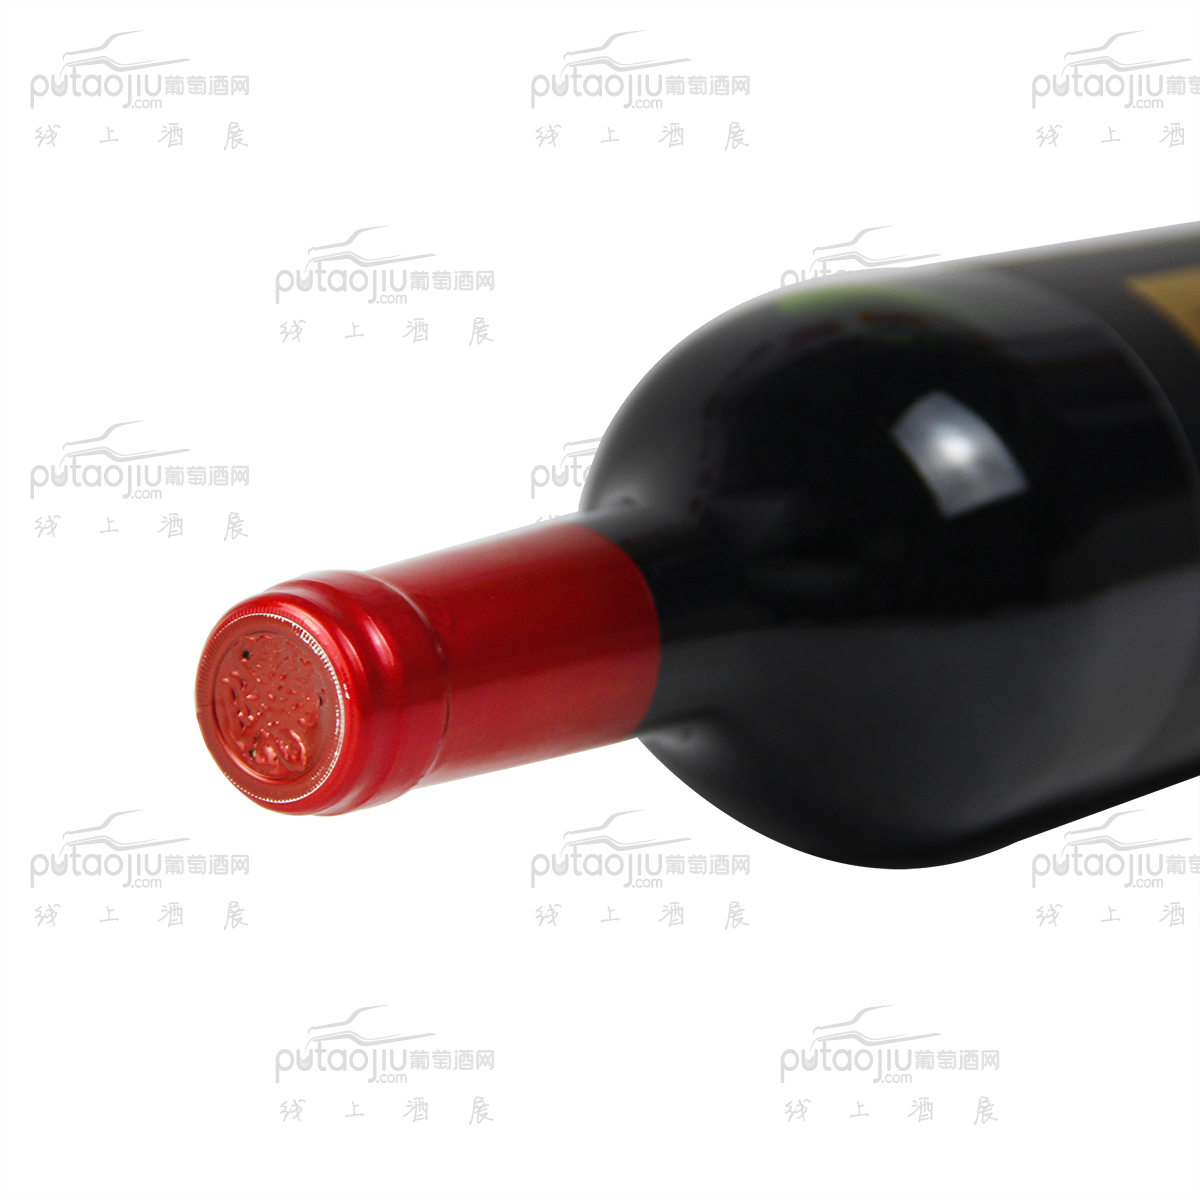 南非西开普省猎豹酒庄混酿特别版干红葡萄酒